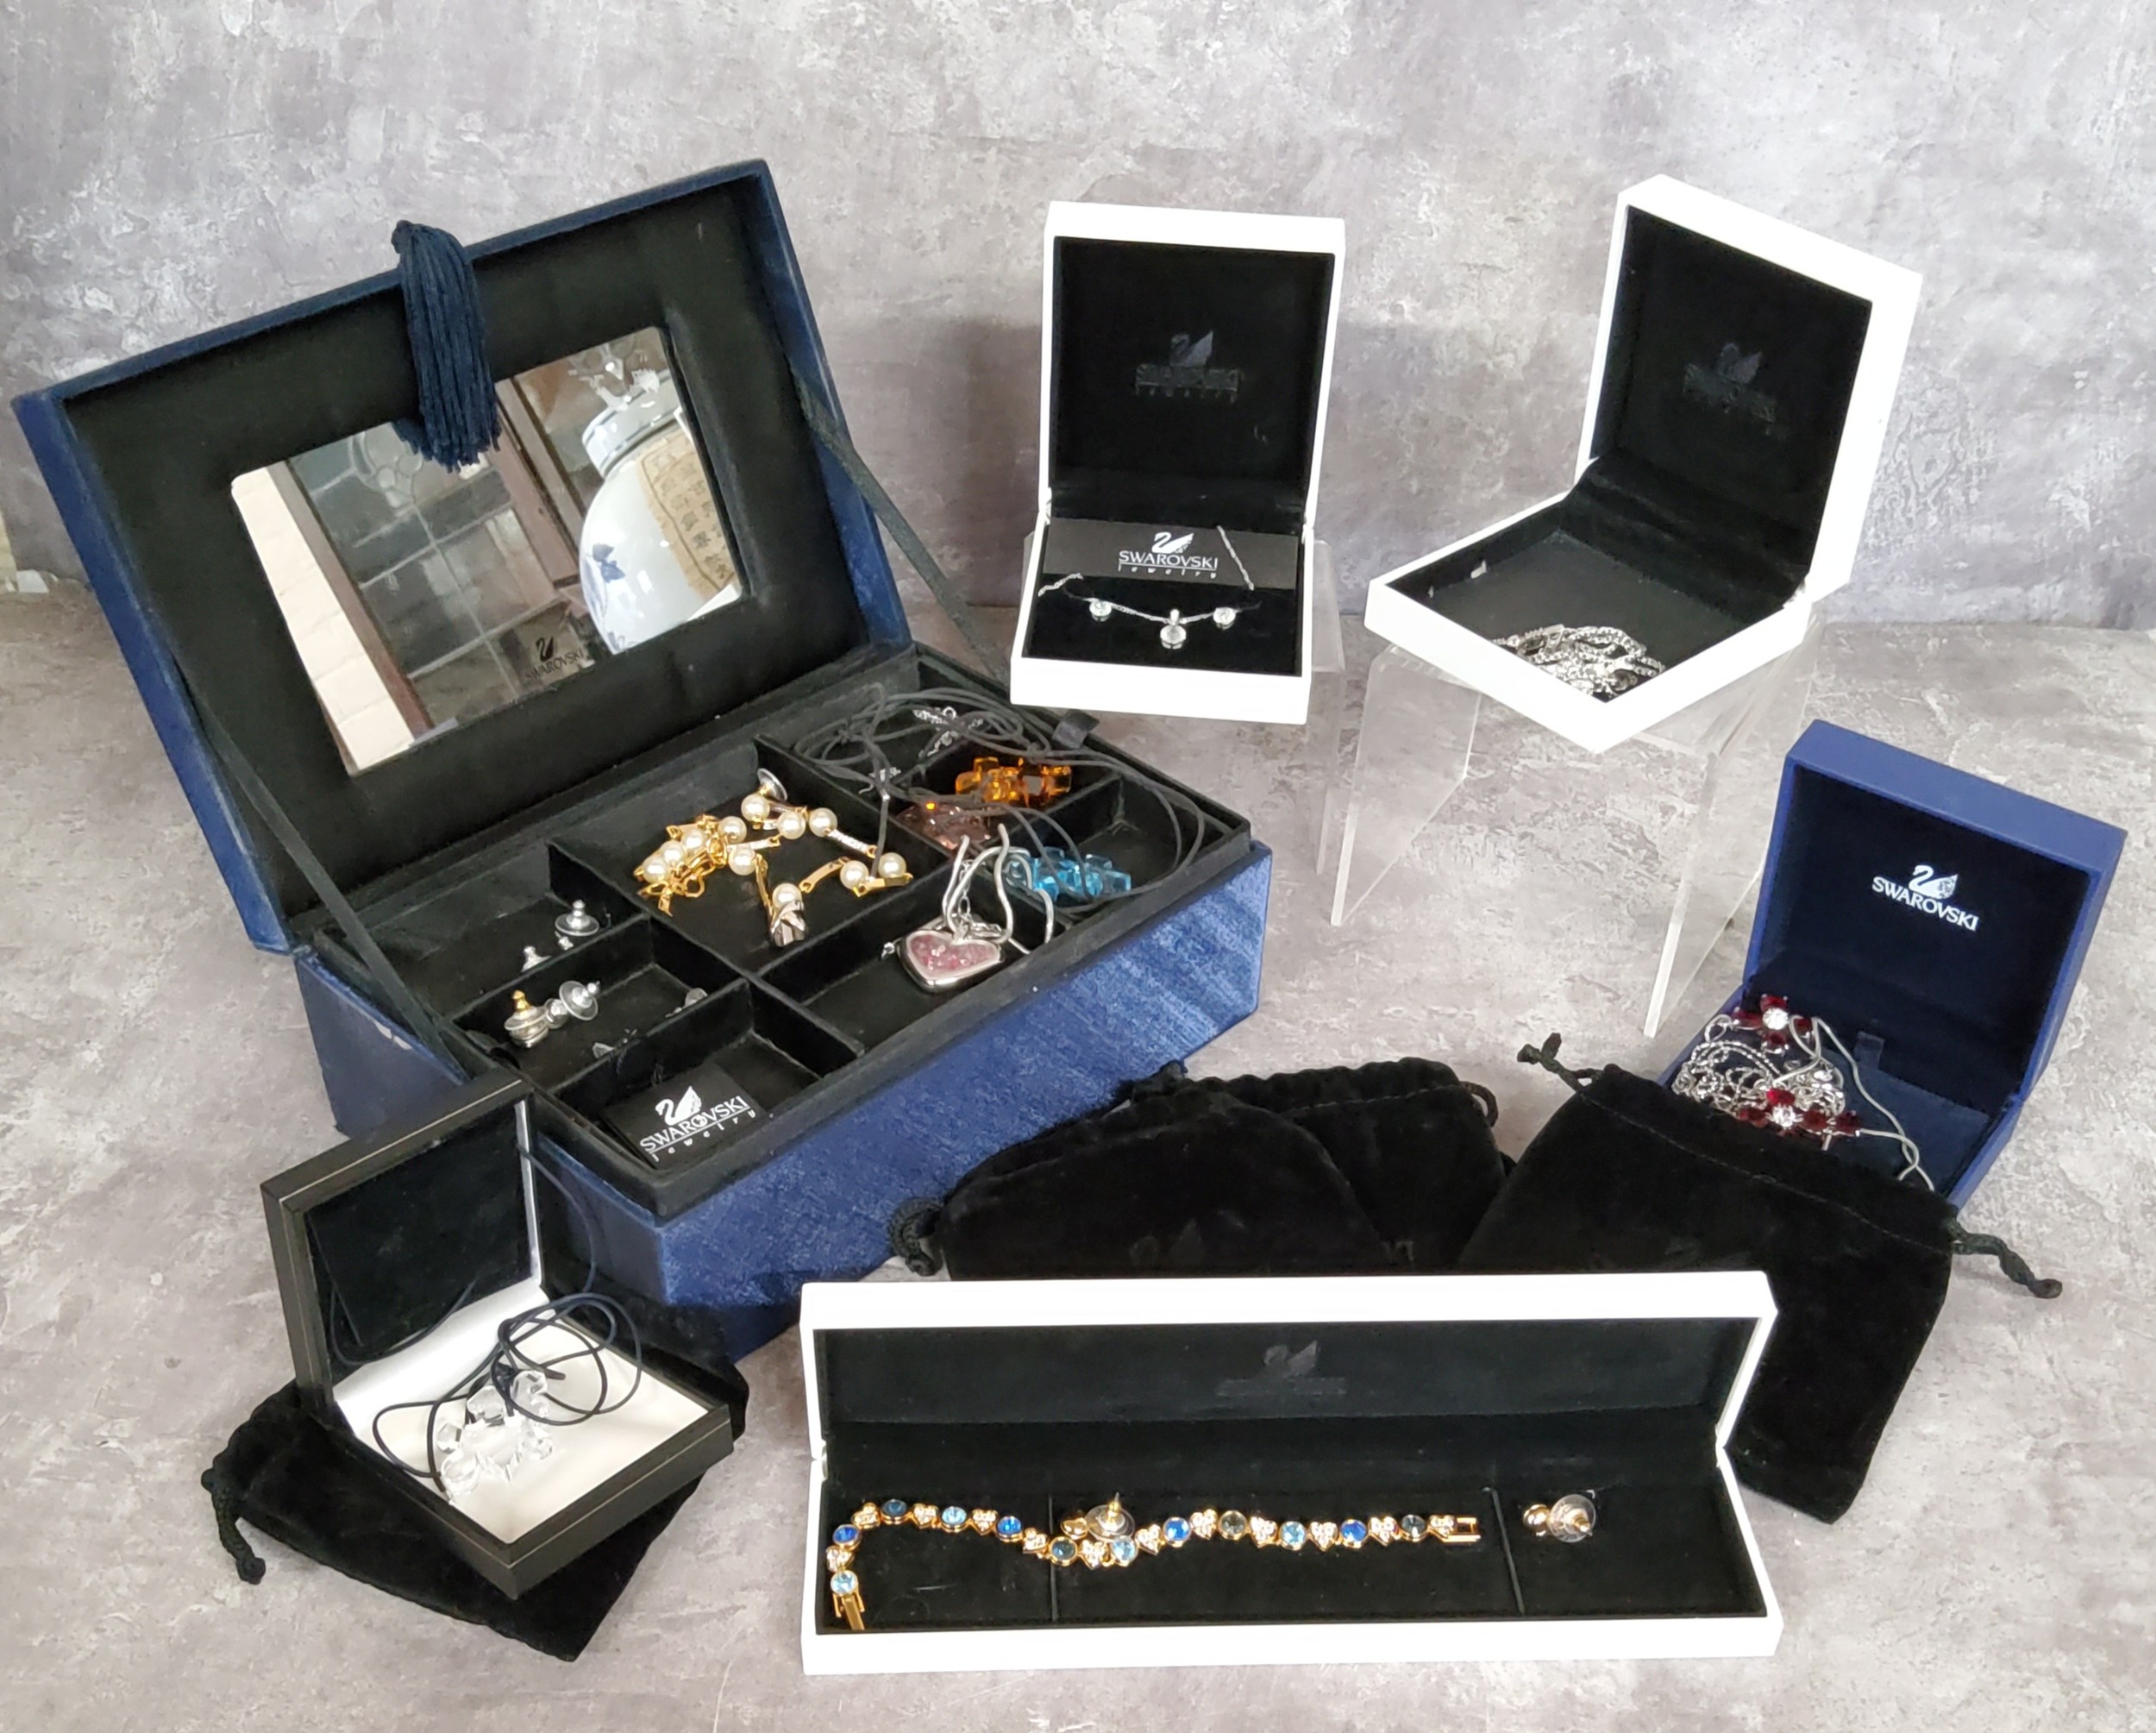 Swarovski Jewelery (sic) including a clear, an amber & a blue crystal jigsaw piece necklaces;